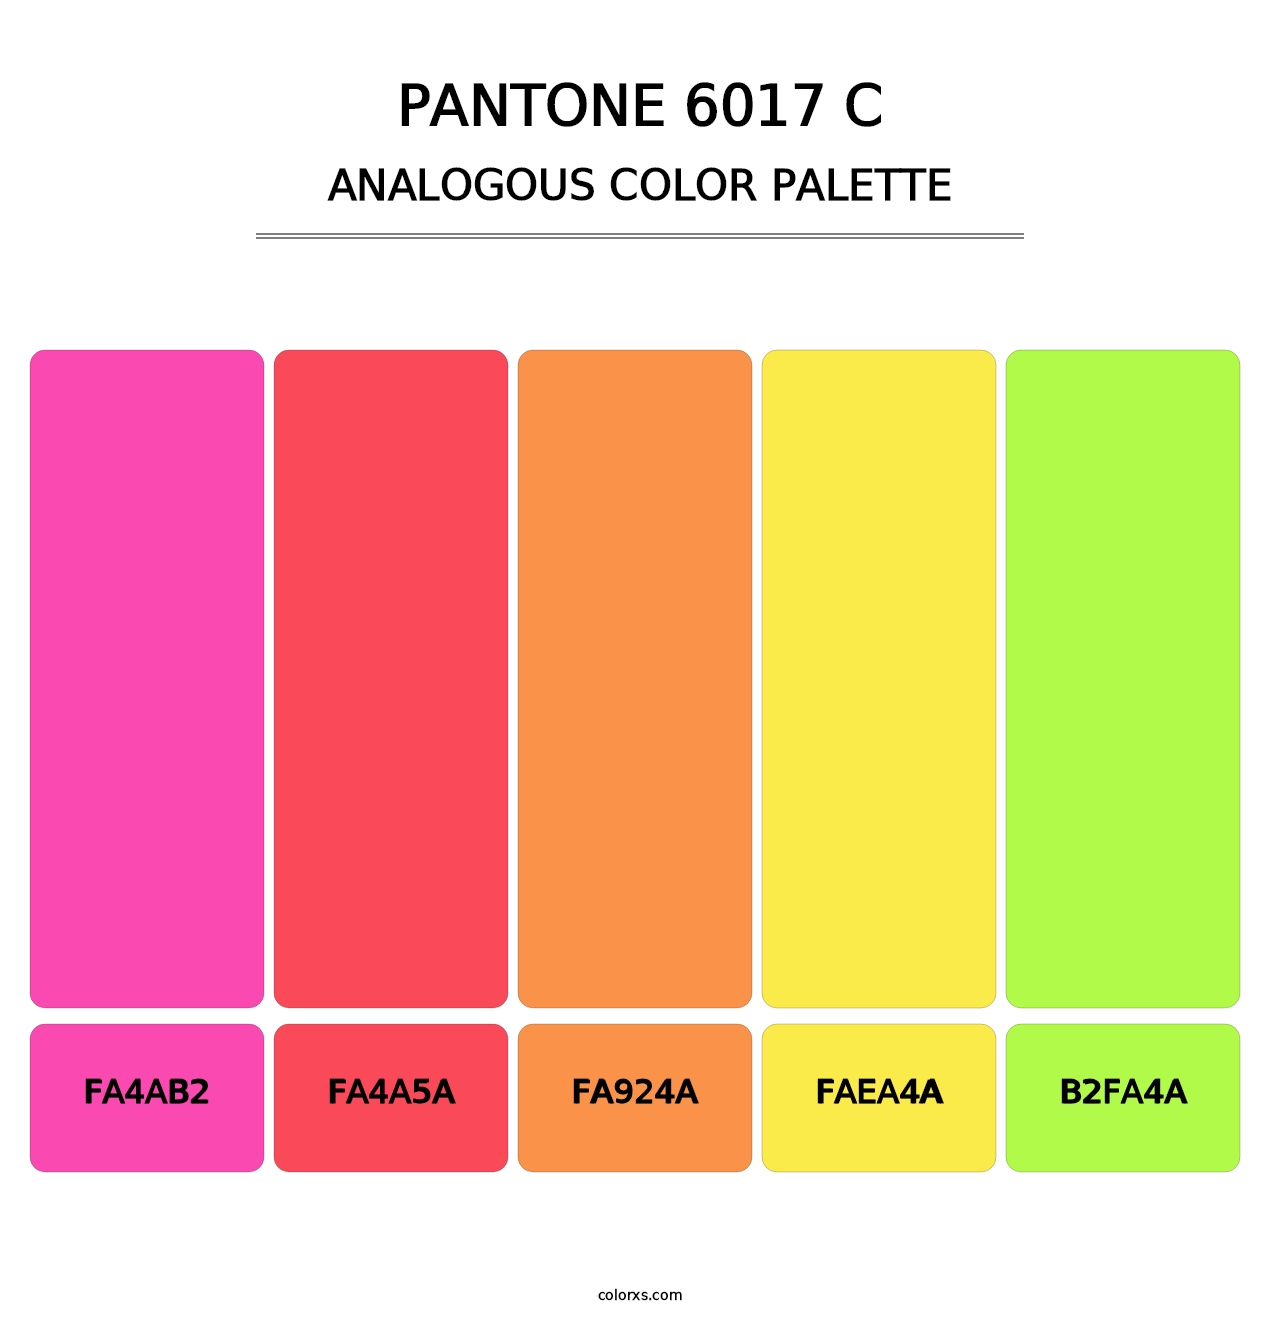 PANTONE 6017 C - Analogous Color Palette